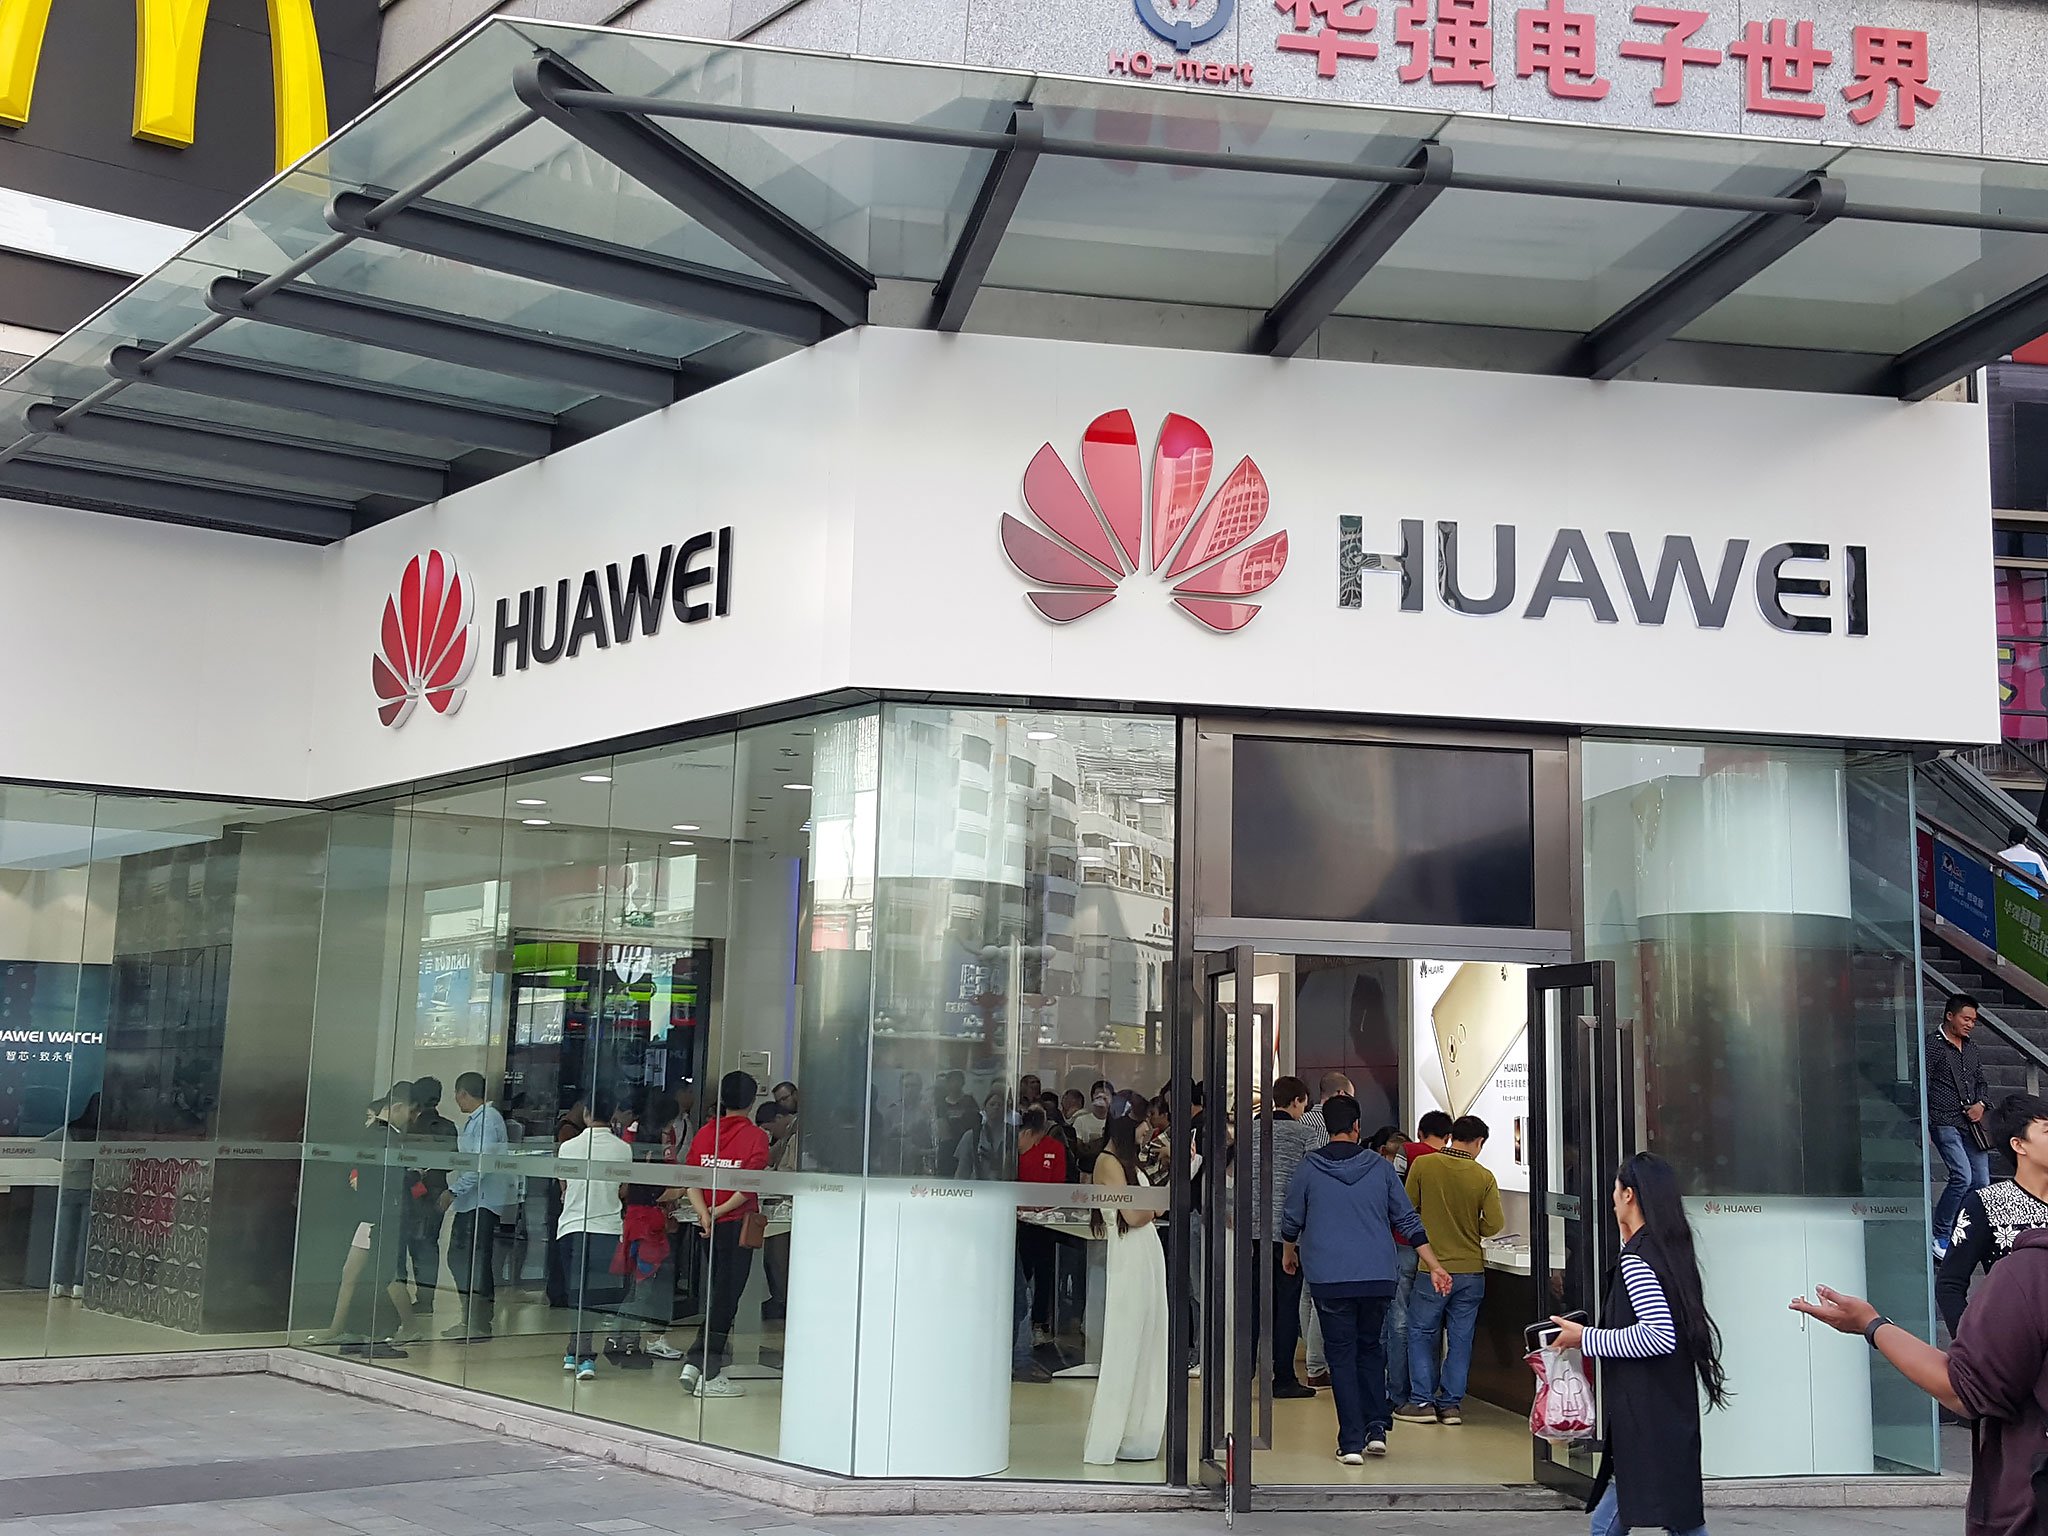 Купить huawei в магазине. Huawei магазин. Магазин Хуавей в Китае. Huawei CN. 1 Huawei магазин.